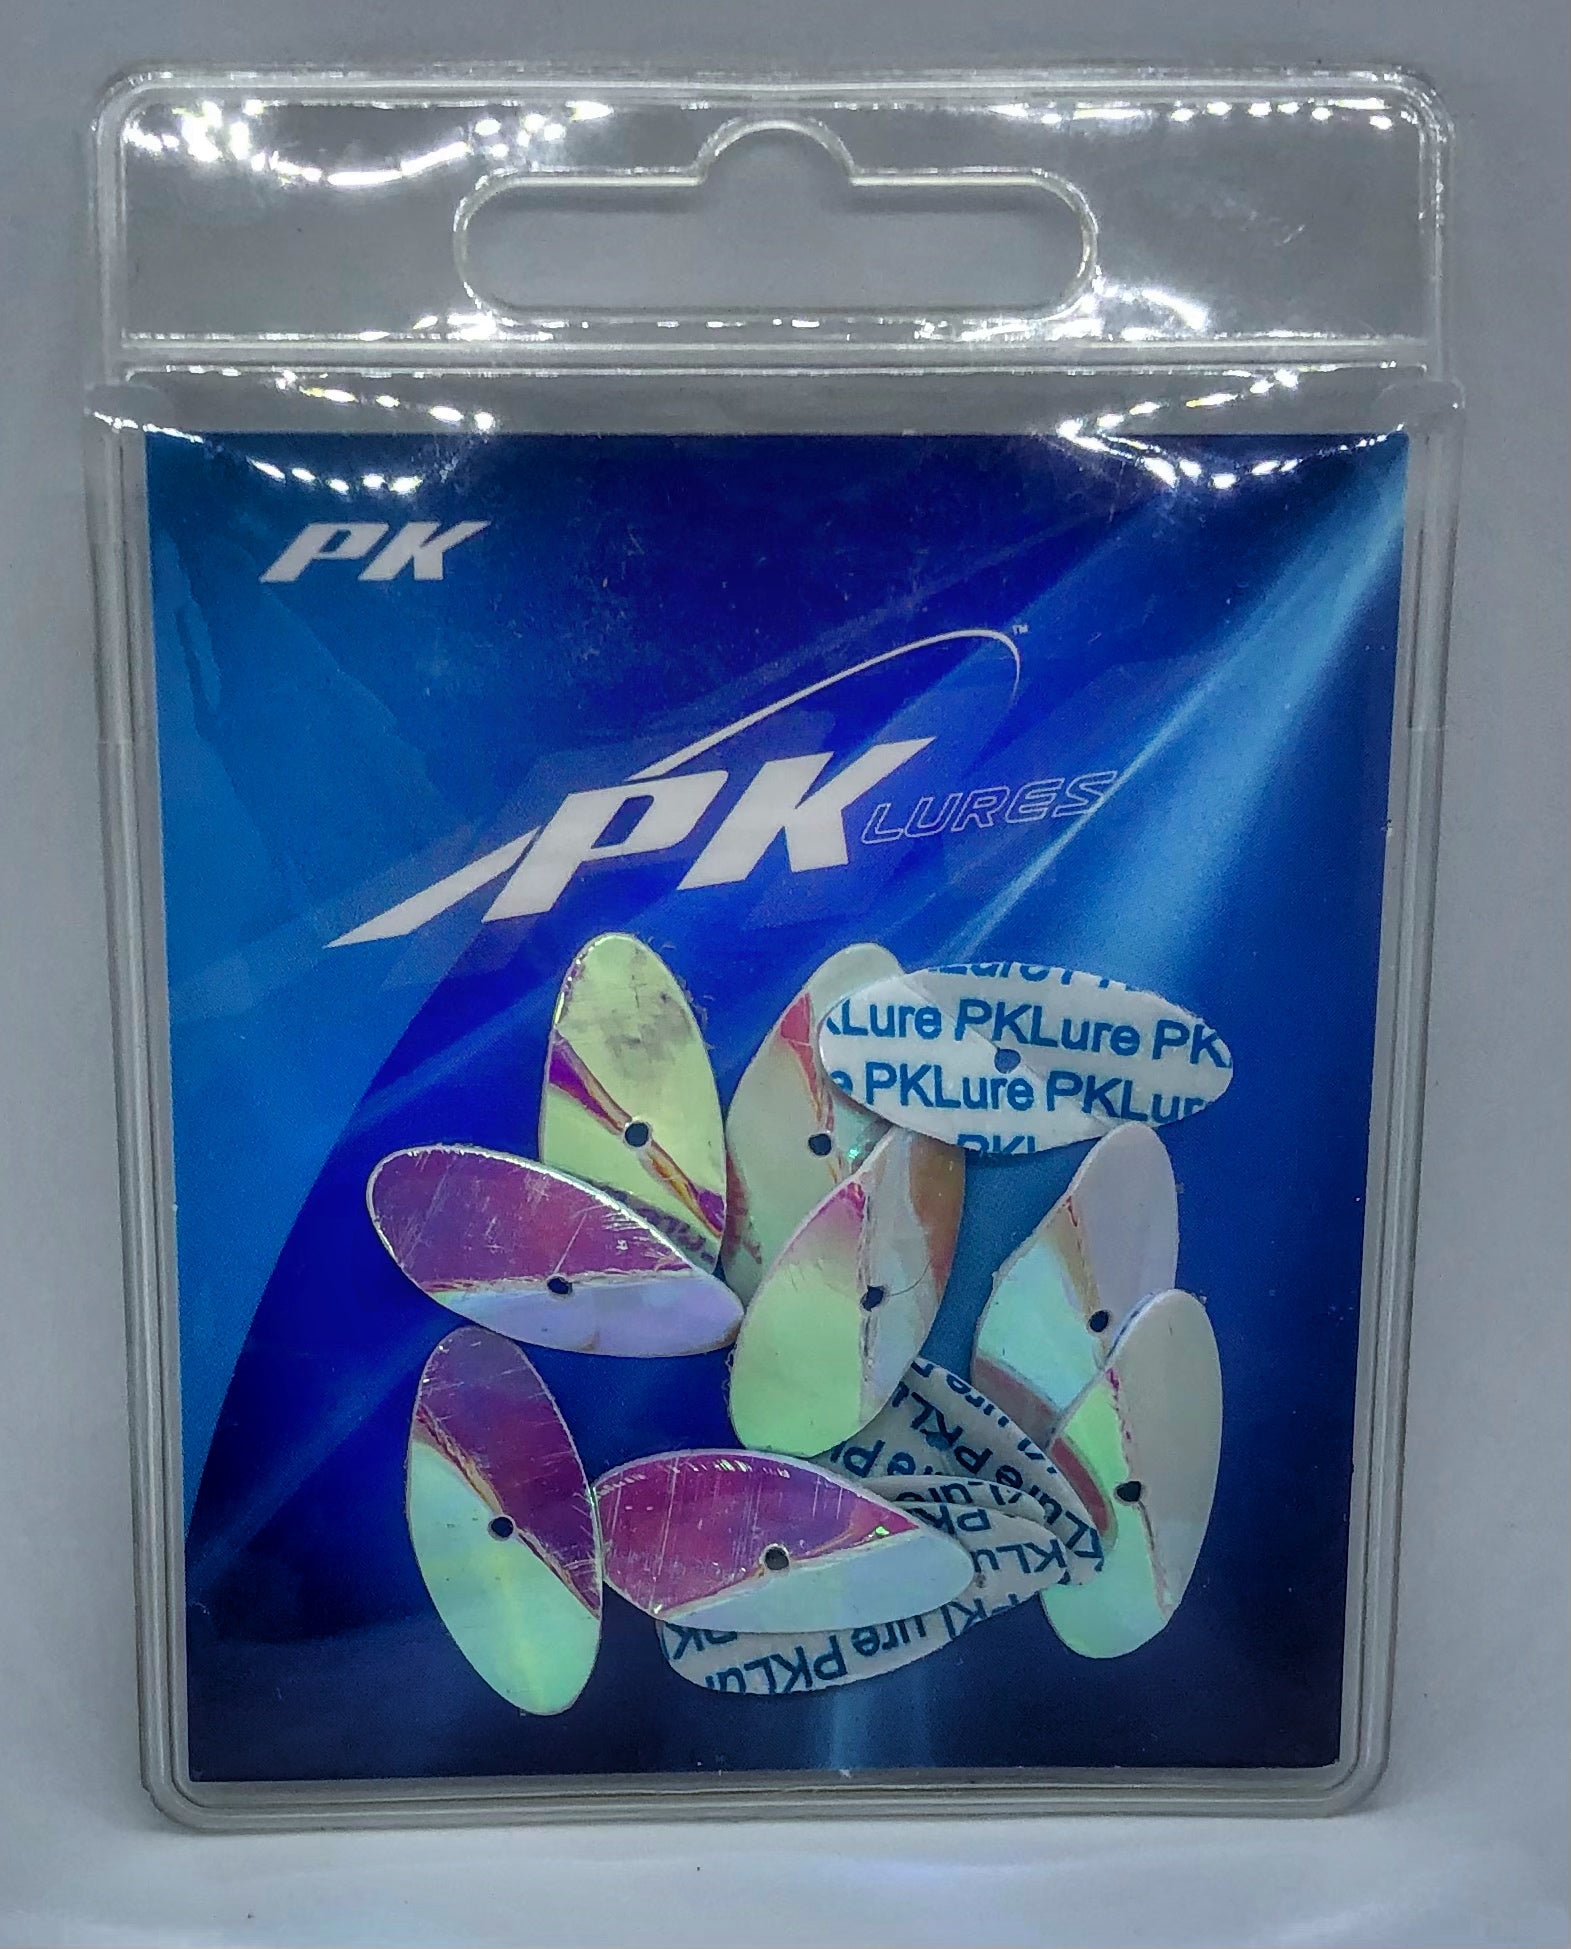 PK Reeff Blades Accessories